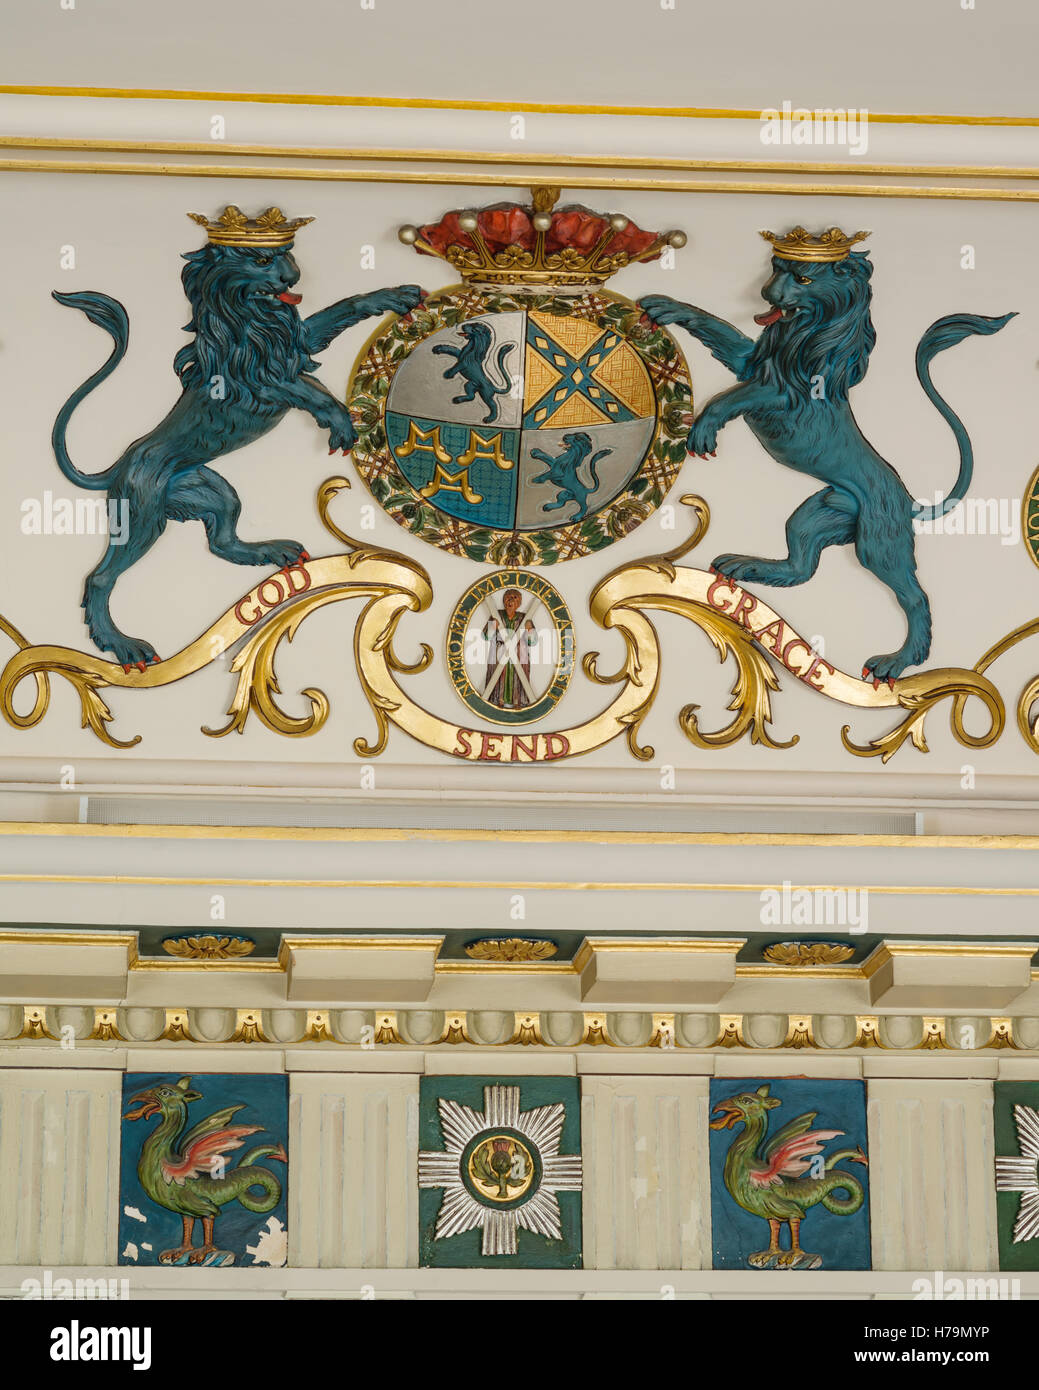 Blue lions sur crest lire 'Envoyer' DANS LA GRÂCE DE DIEU du 18ème siècle de style palladien Dumfries house, Ayrshire, Scotland Banque D'Images